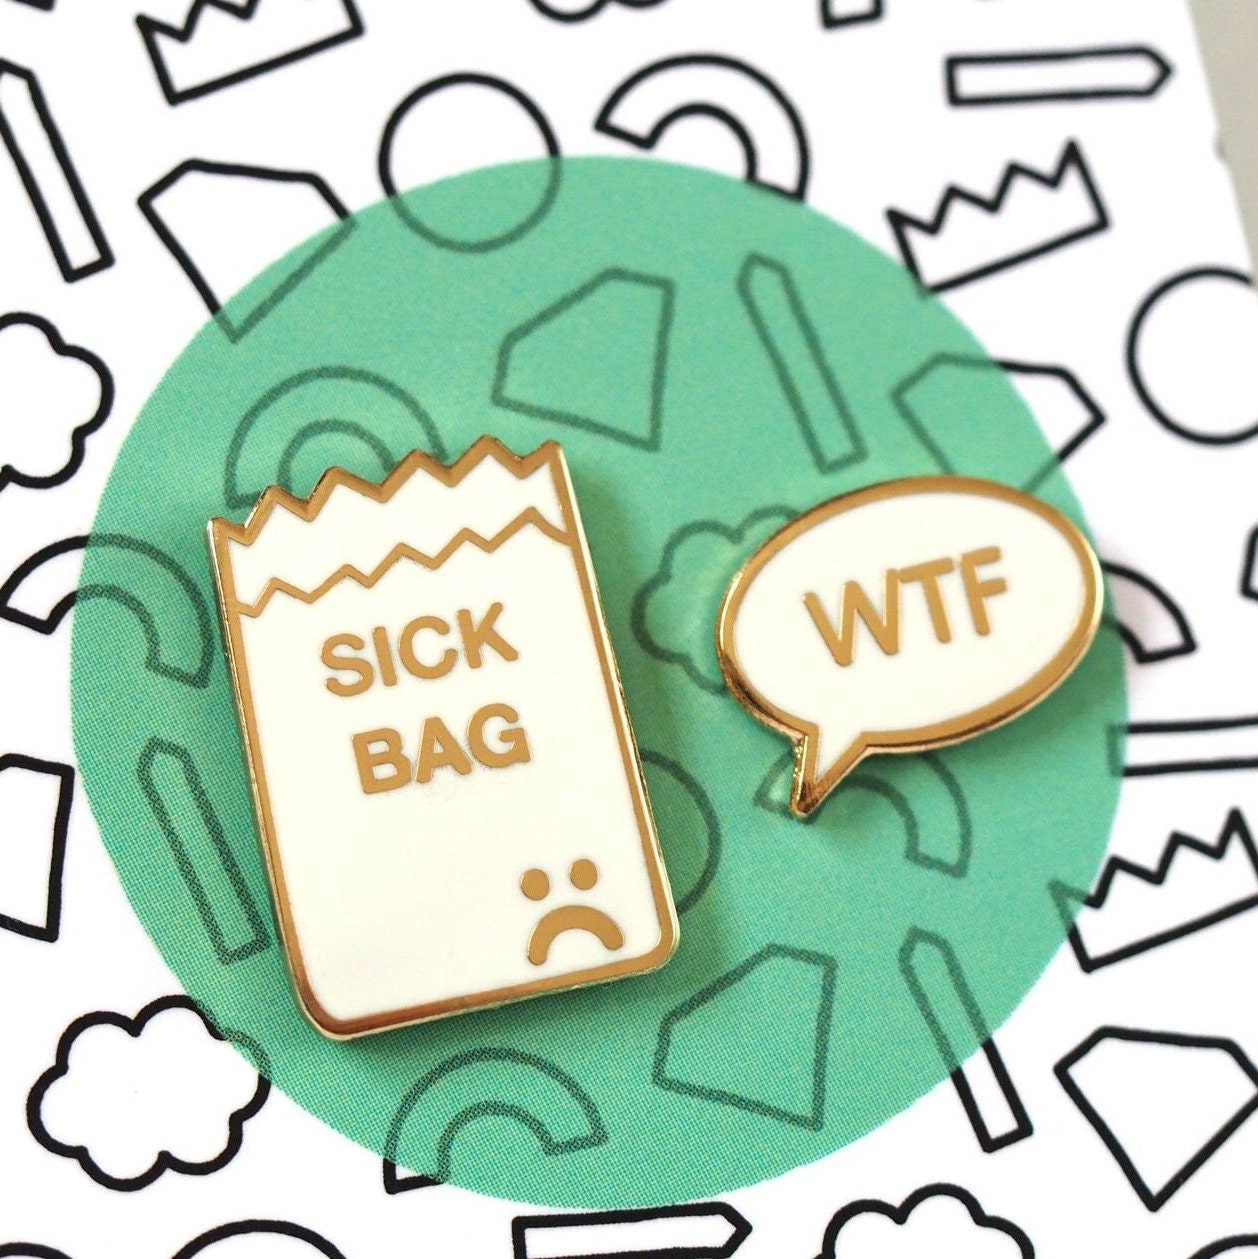 Sick Bag Enamel Pin Badge